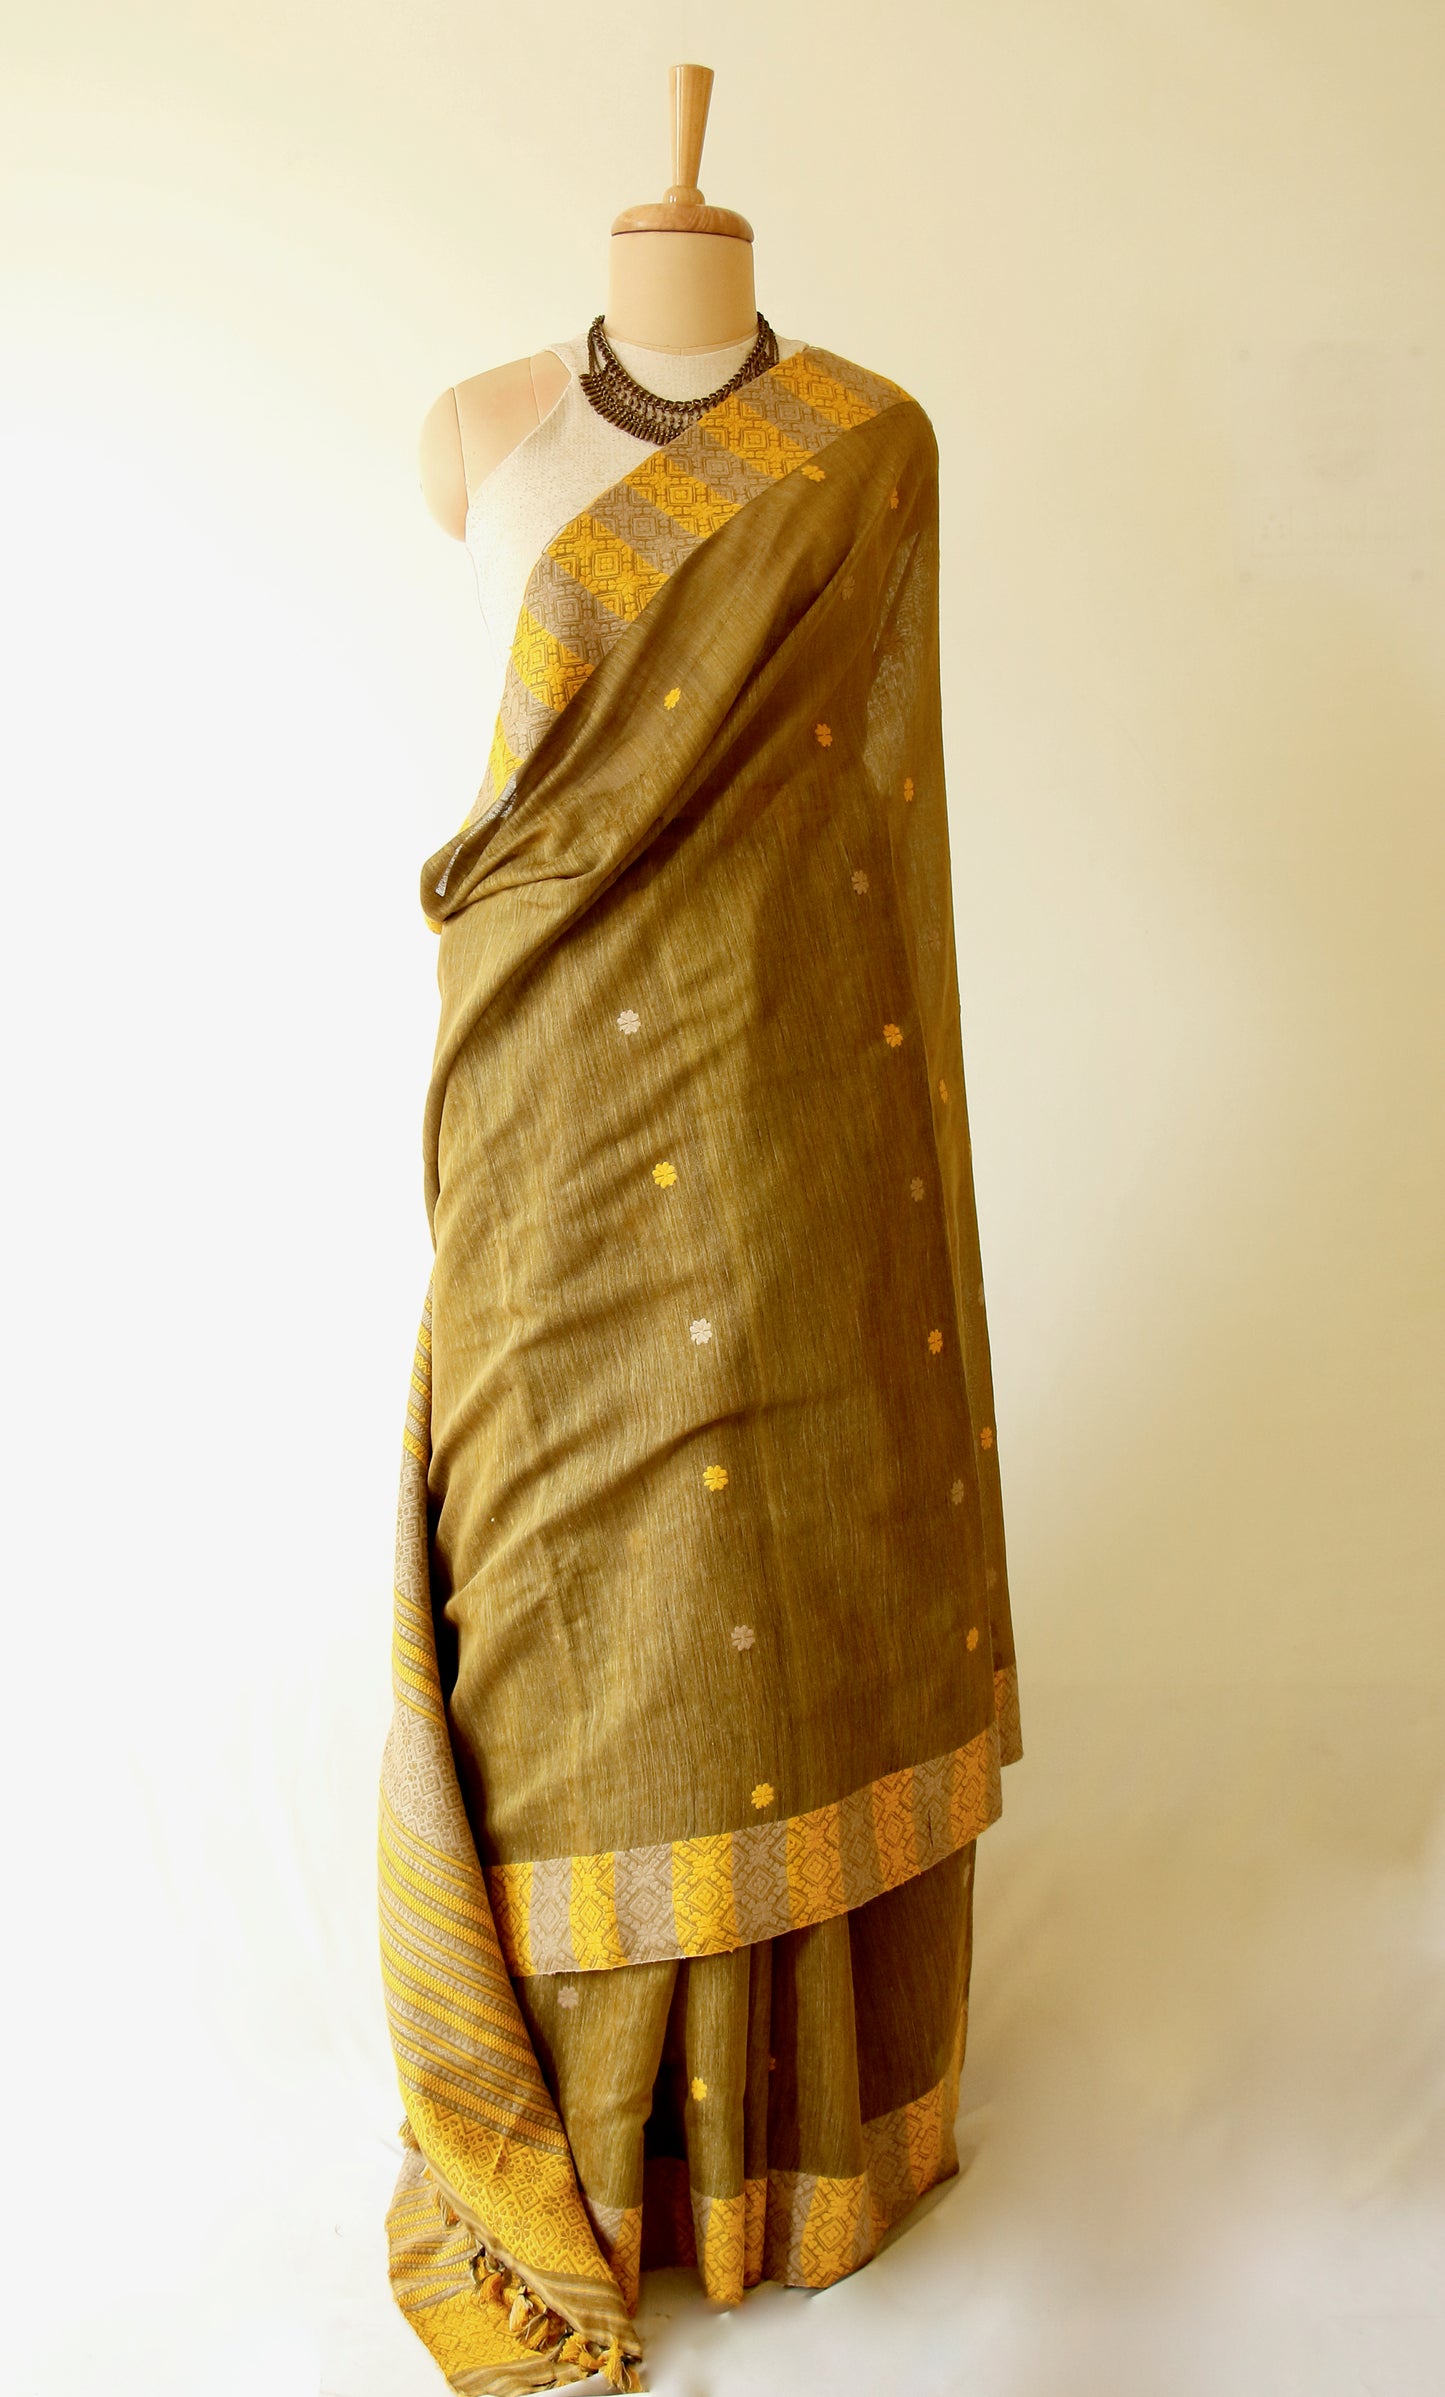 Natural dyed Eri Silk / Mulberry silk handloom saree from Assam